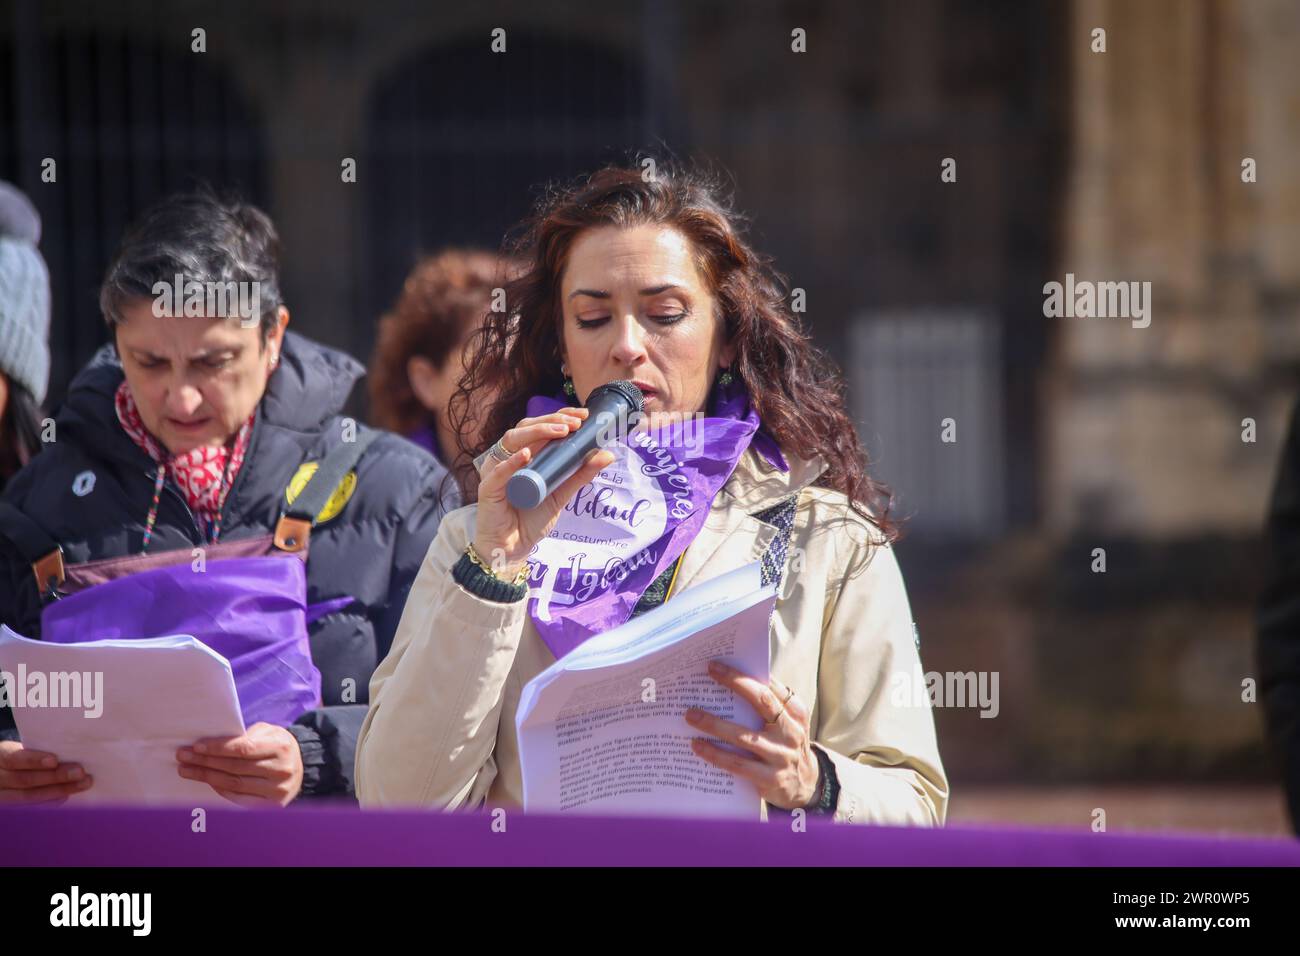 Oviedo, Spanien, 10. März 2024: Ein Mädchen liest die Kundgebungsrede während der Kundgebung, bis die Gleichstellung üblich wird, am 10. März 2024 in Oviedo, Spanien. Quelle: Alberto Brevers / Alamy Live News. Stockfoto